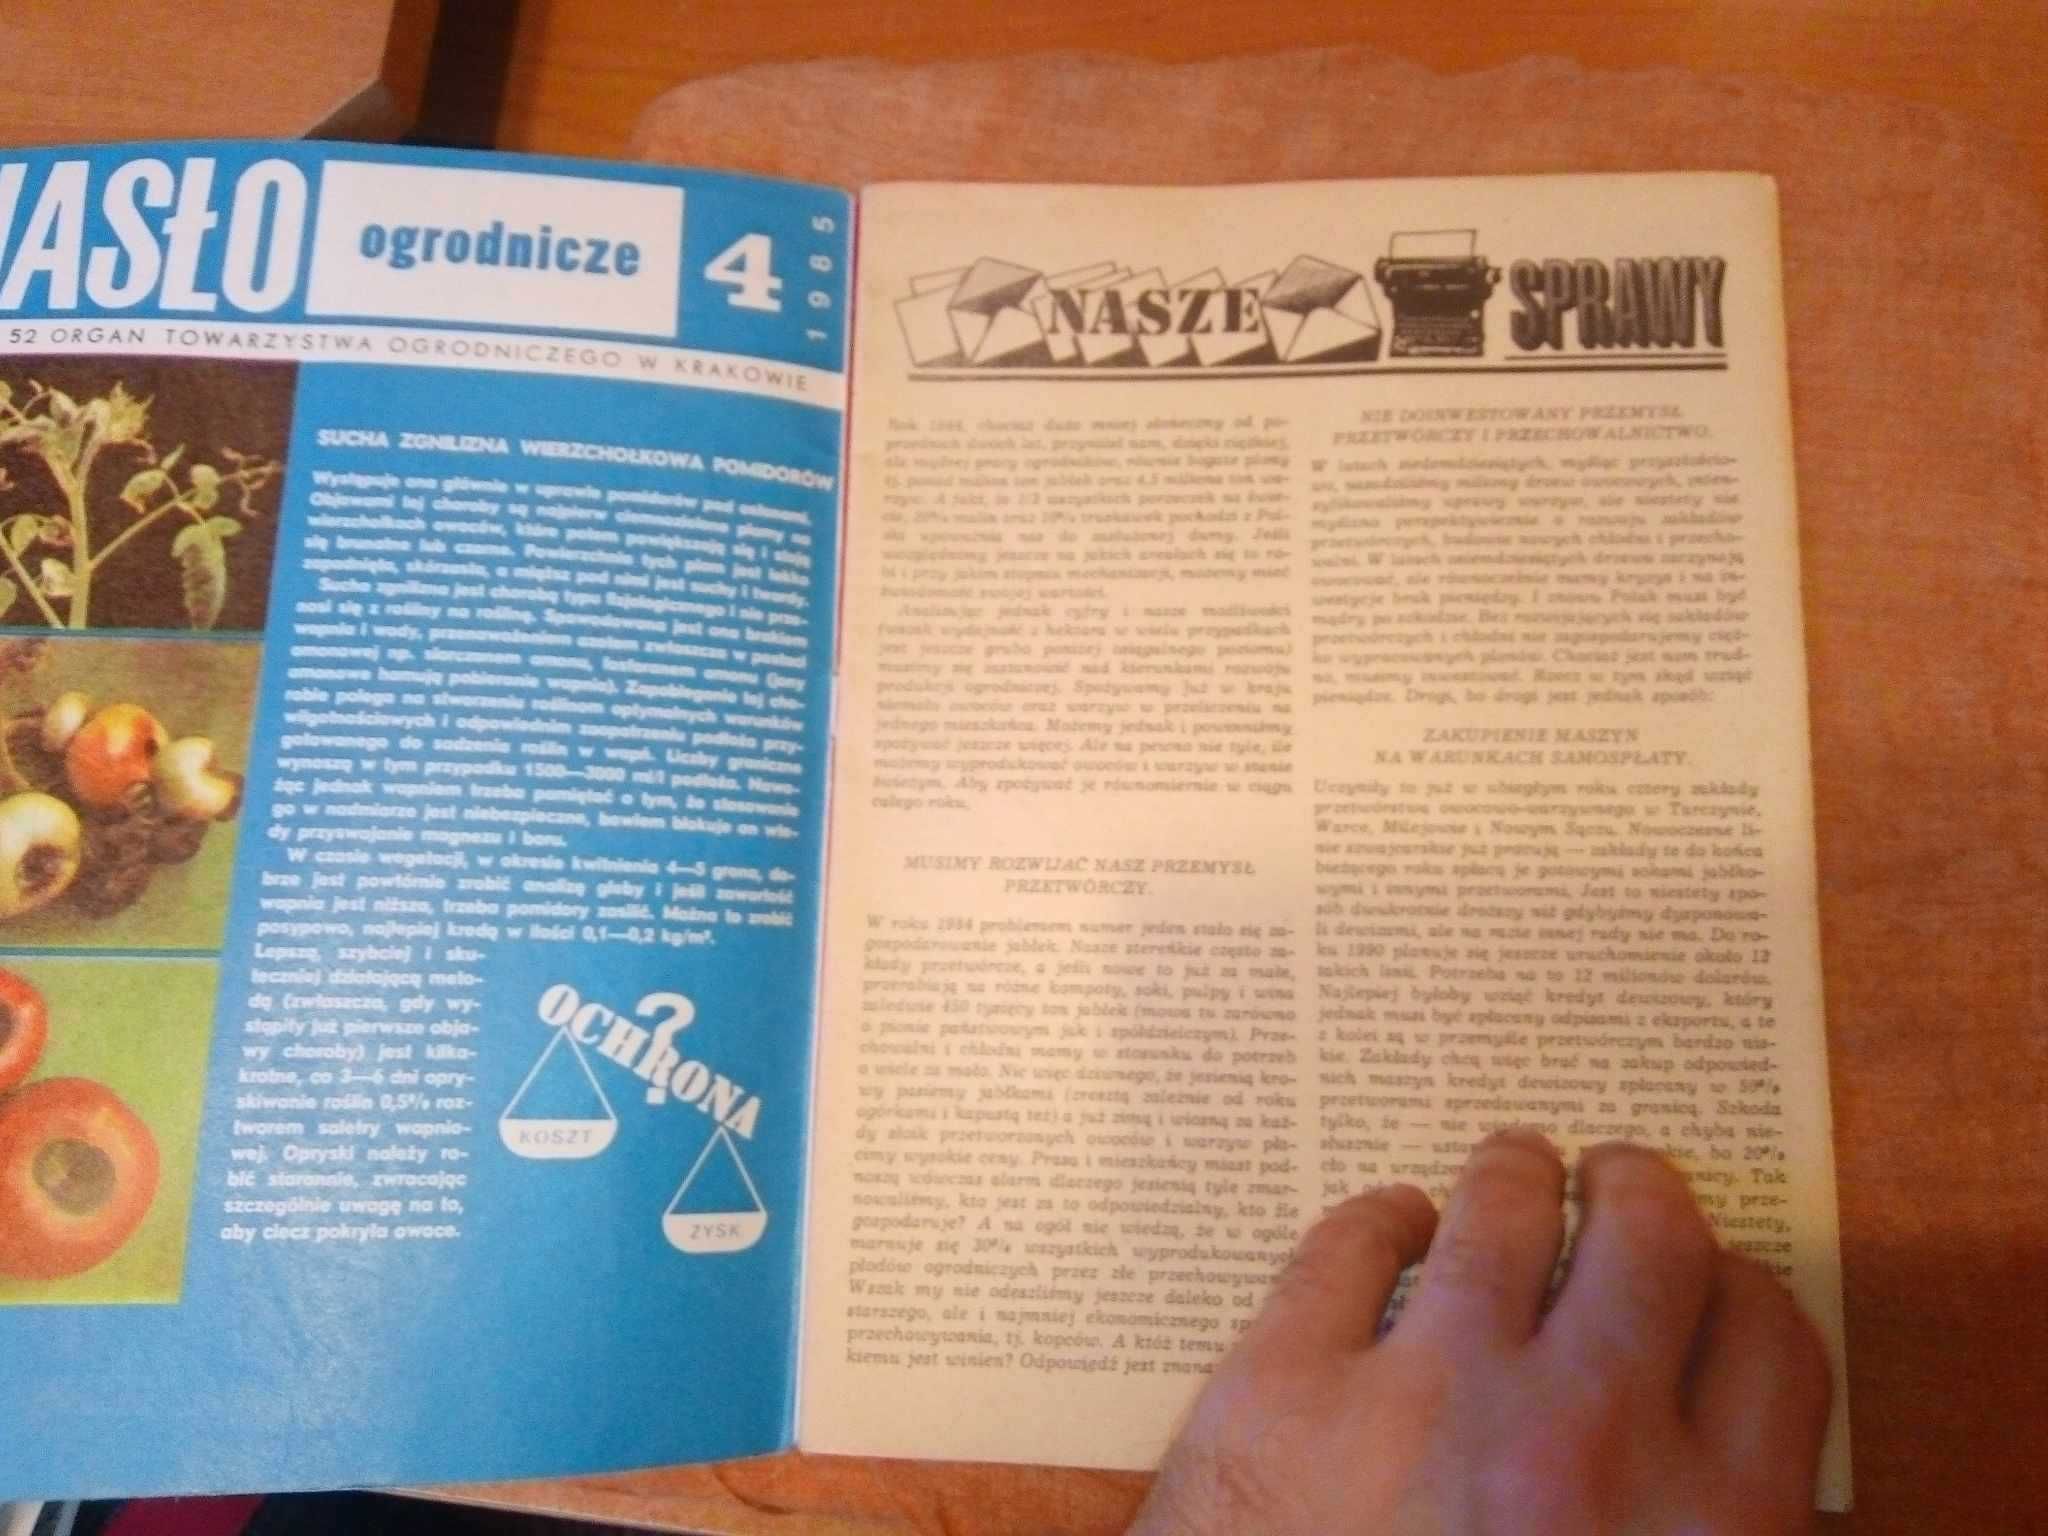 Hasło ogrodnicze miesięcznik 4 1985 ogrodniczy gazeta czasopismo